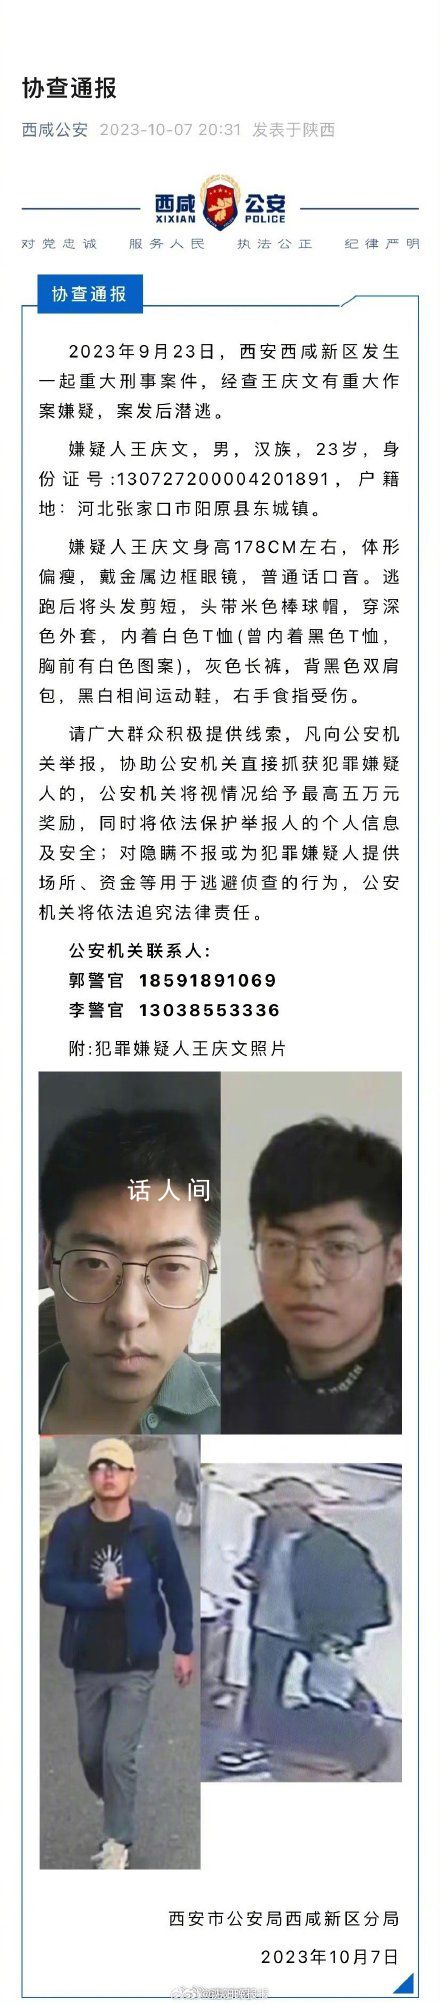 西安重大刑案嫌犯被抓 王庆文个人资料介绍